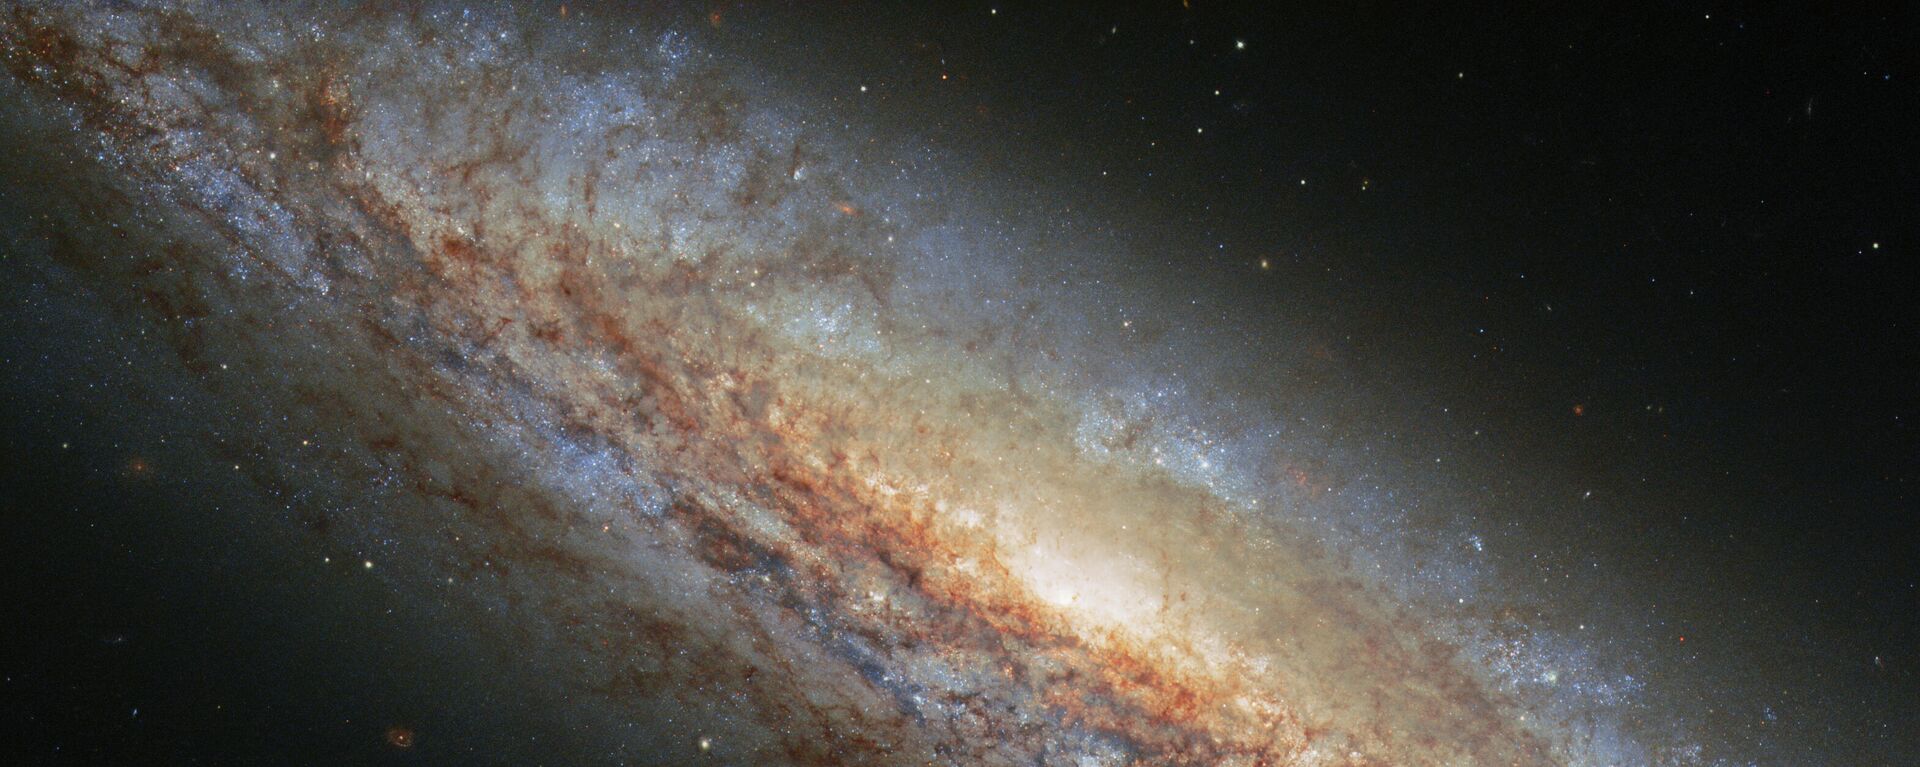 La galaxia NGC 4666 - Sputnik Mundo, 1920, 11.10.2021